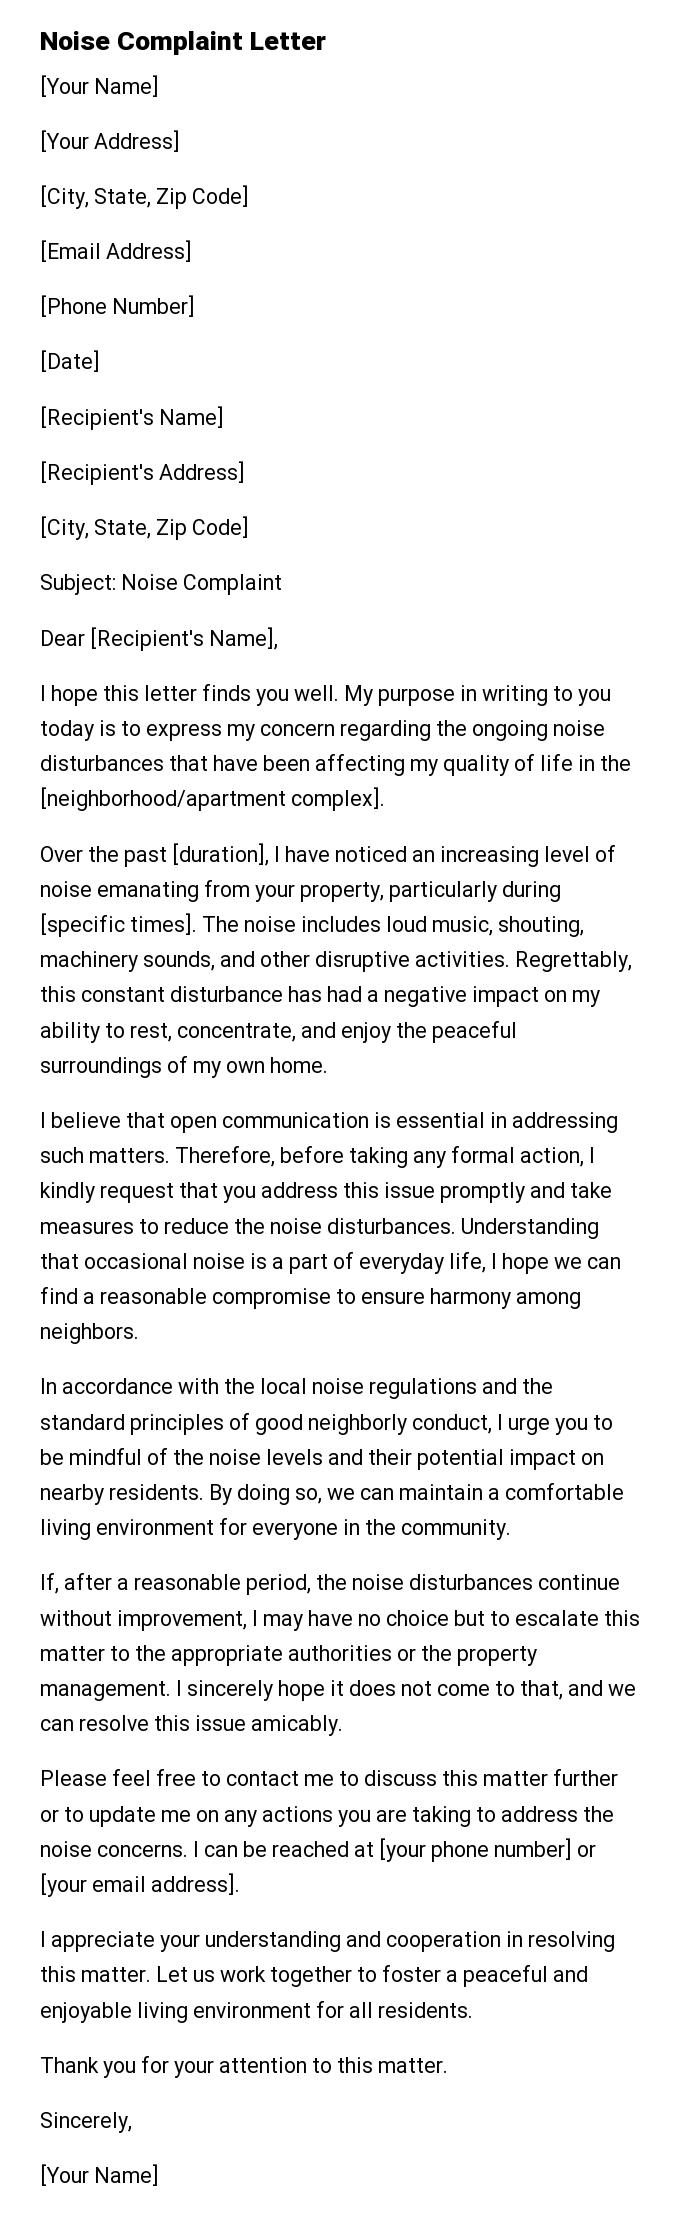 Noise Complaint Letter